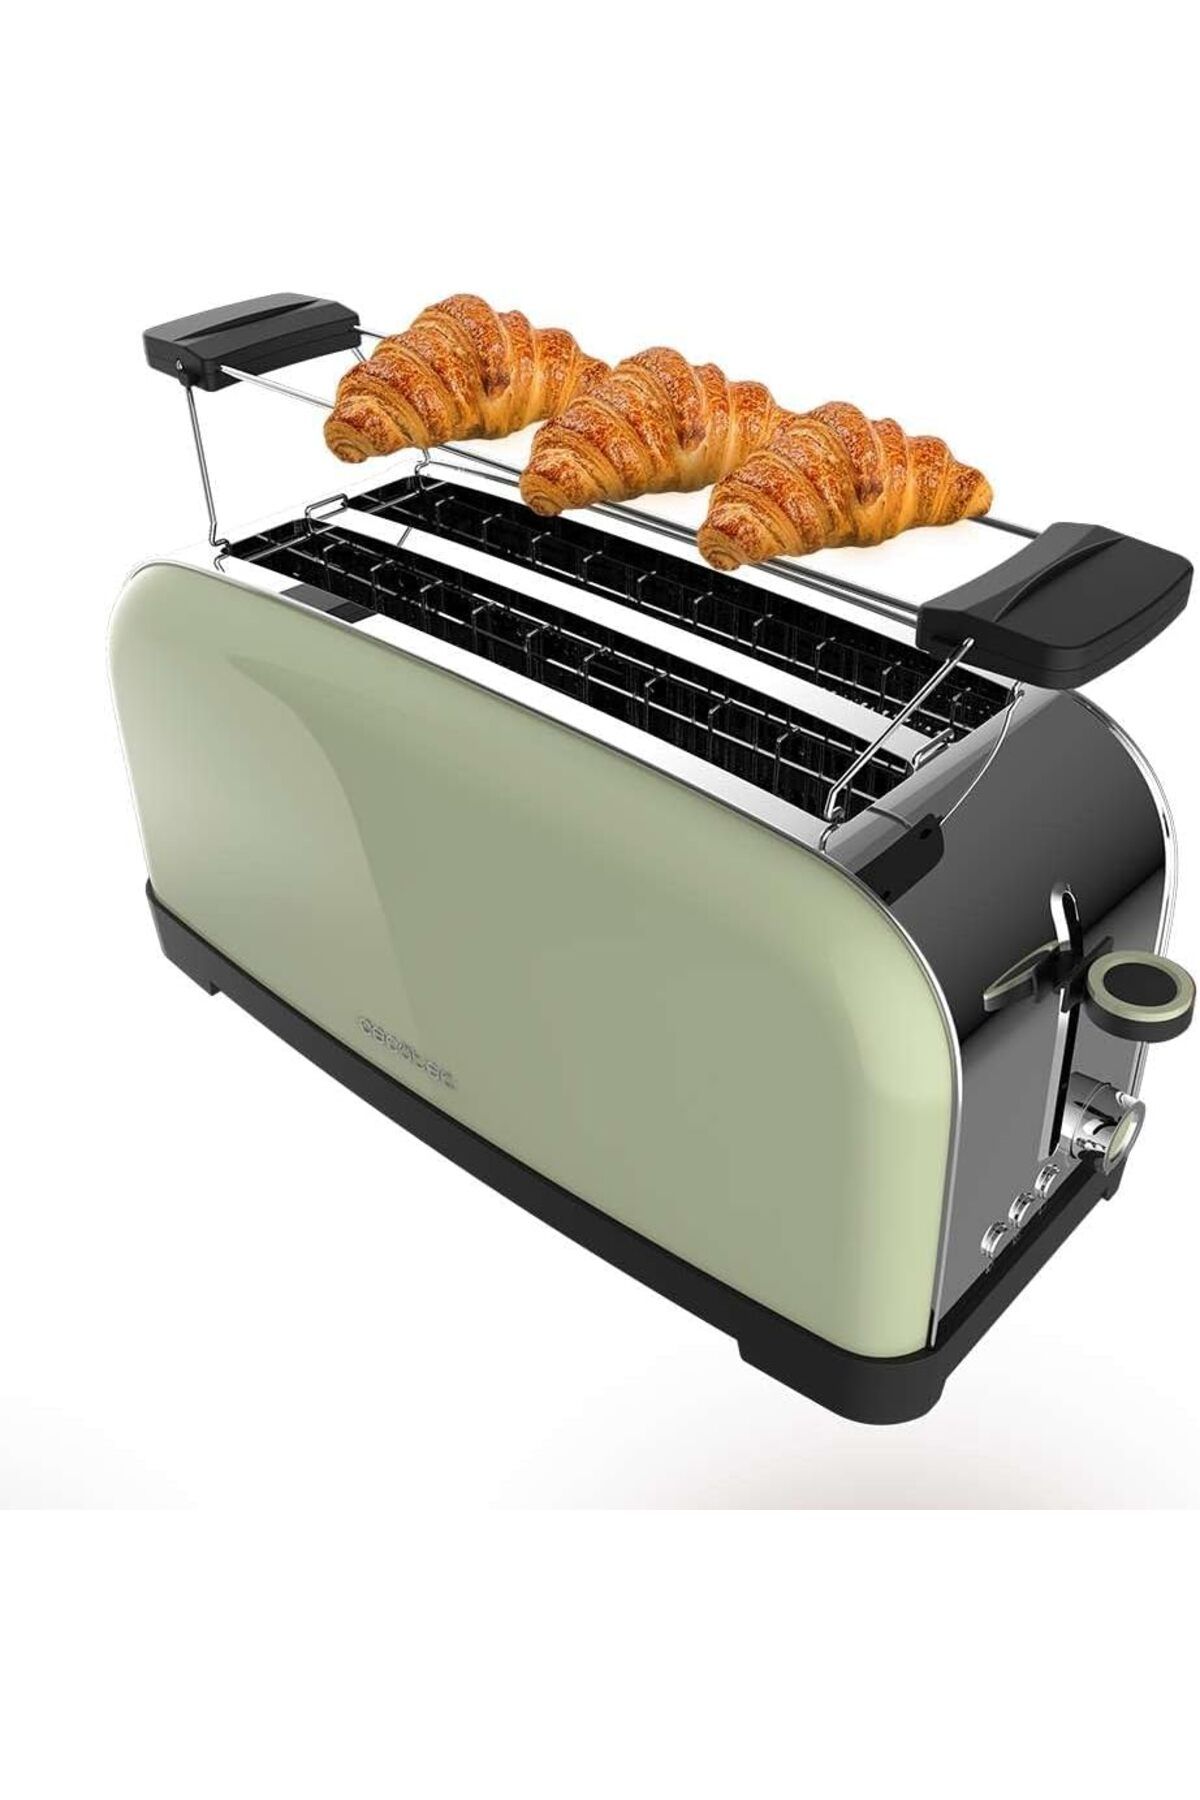 CECOTEC Dikey Ekmek Kızartma Makinesi Toastin' Time 1500 Yeşil, 1500 W, Çift Uzun ve Geniş Yarık